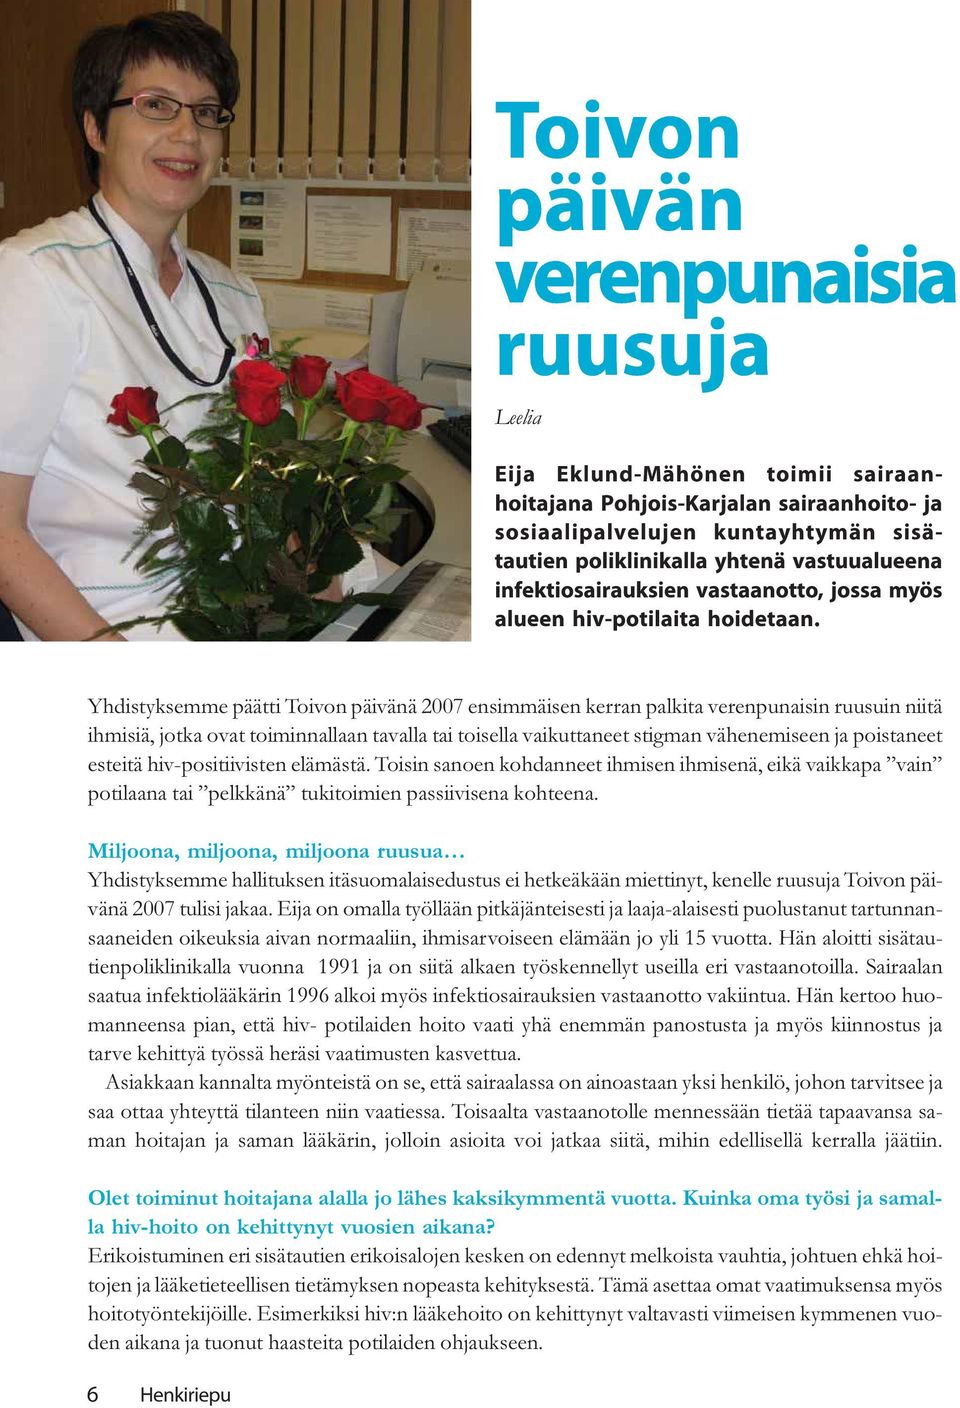 Yhdistyksemme päätti Toivon päivänä 2007 ensimmäisen kerran palkita verenpunaisin ruusuin niitä ihmisiä, jotka ovat toiminnallaan tavalla tai toisella vaikuttaneet stigman vähenemiseen ja poistaneet